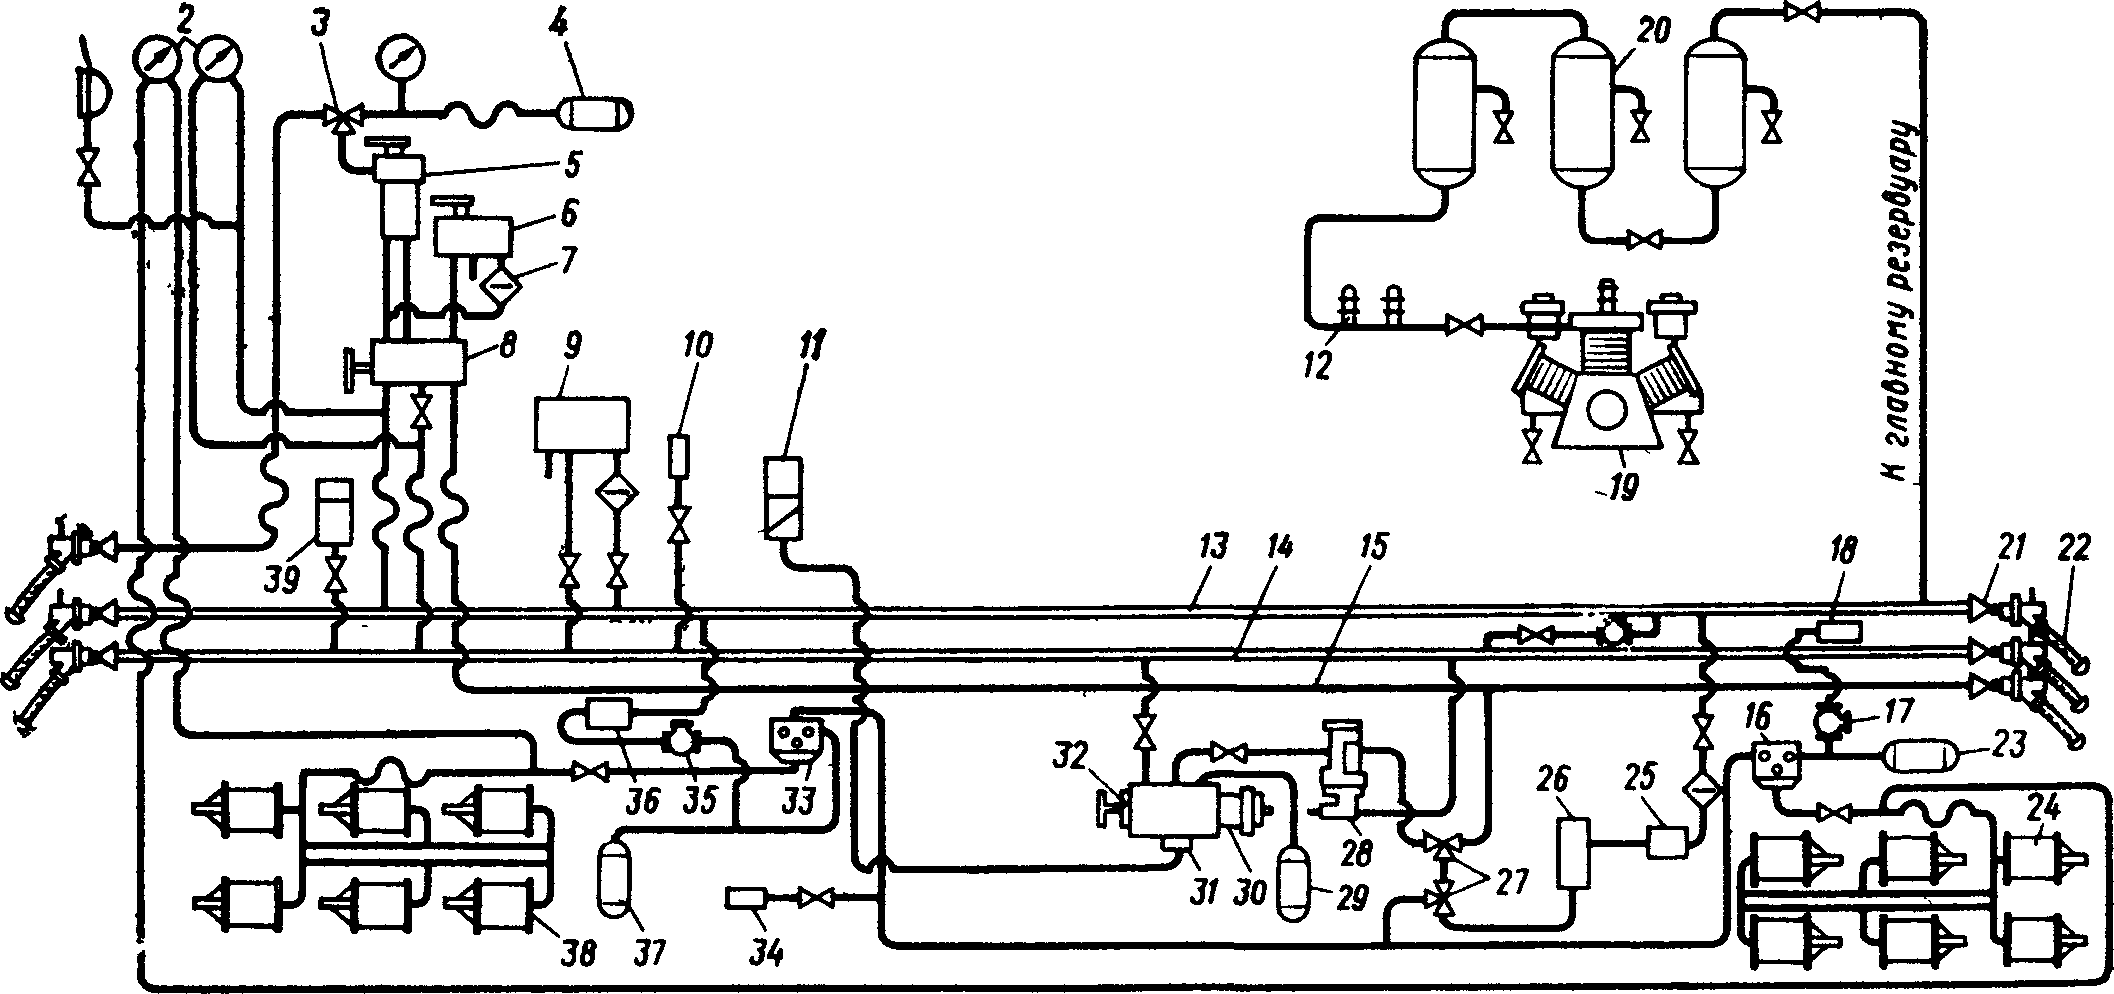 схема тормозного оборудования одной секции электровоза ВЛ11 и тепловозов 2ТЭ121 и ЗТЭ10М